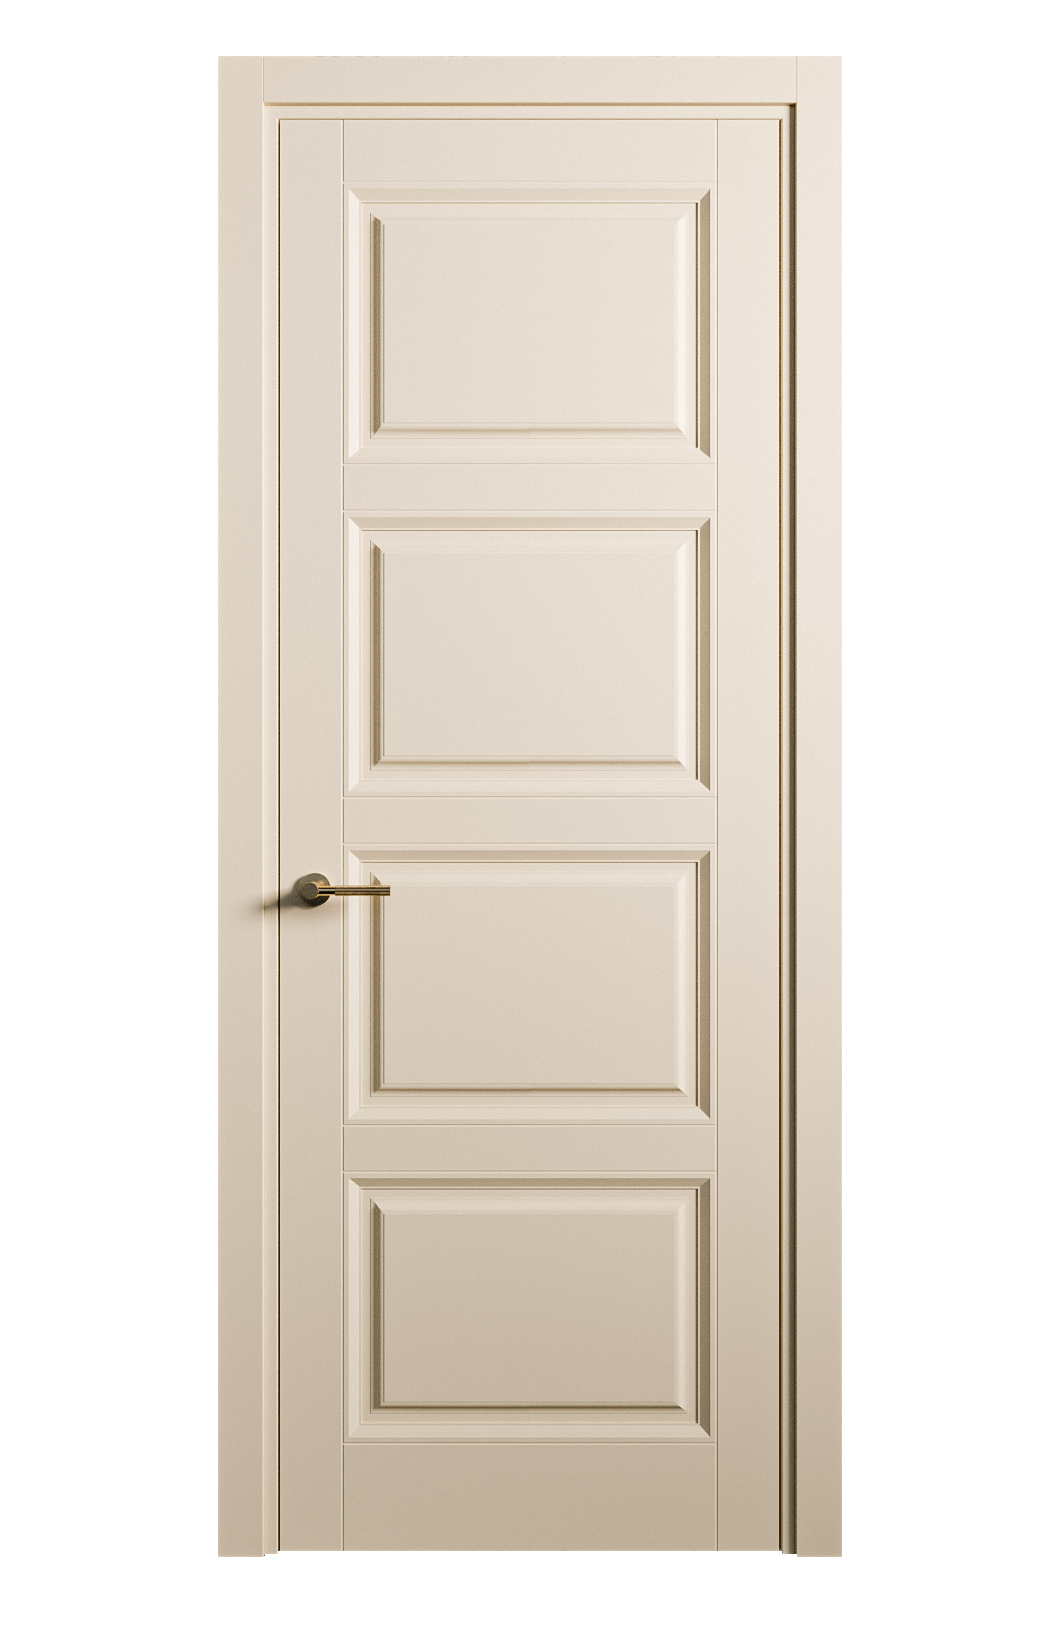 Межкомнатная дверь Venezia-4 глухая эмаль ral 1015 25804